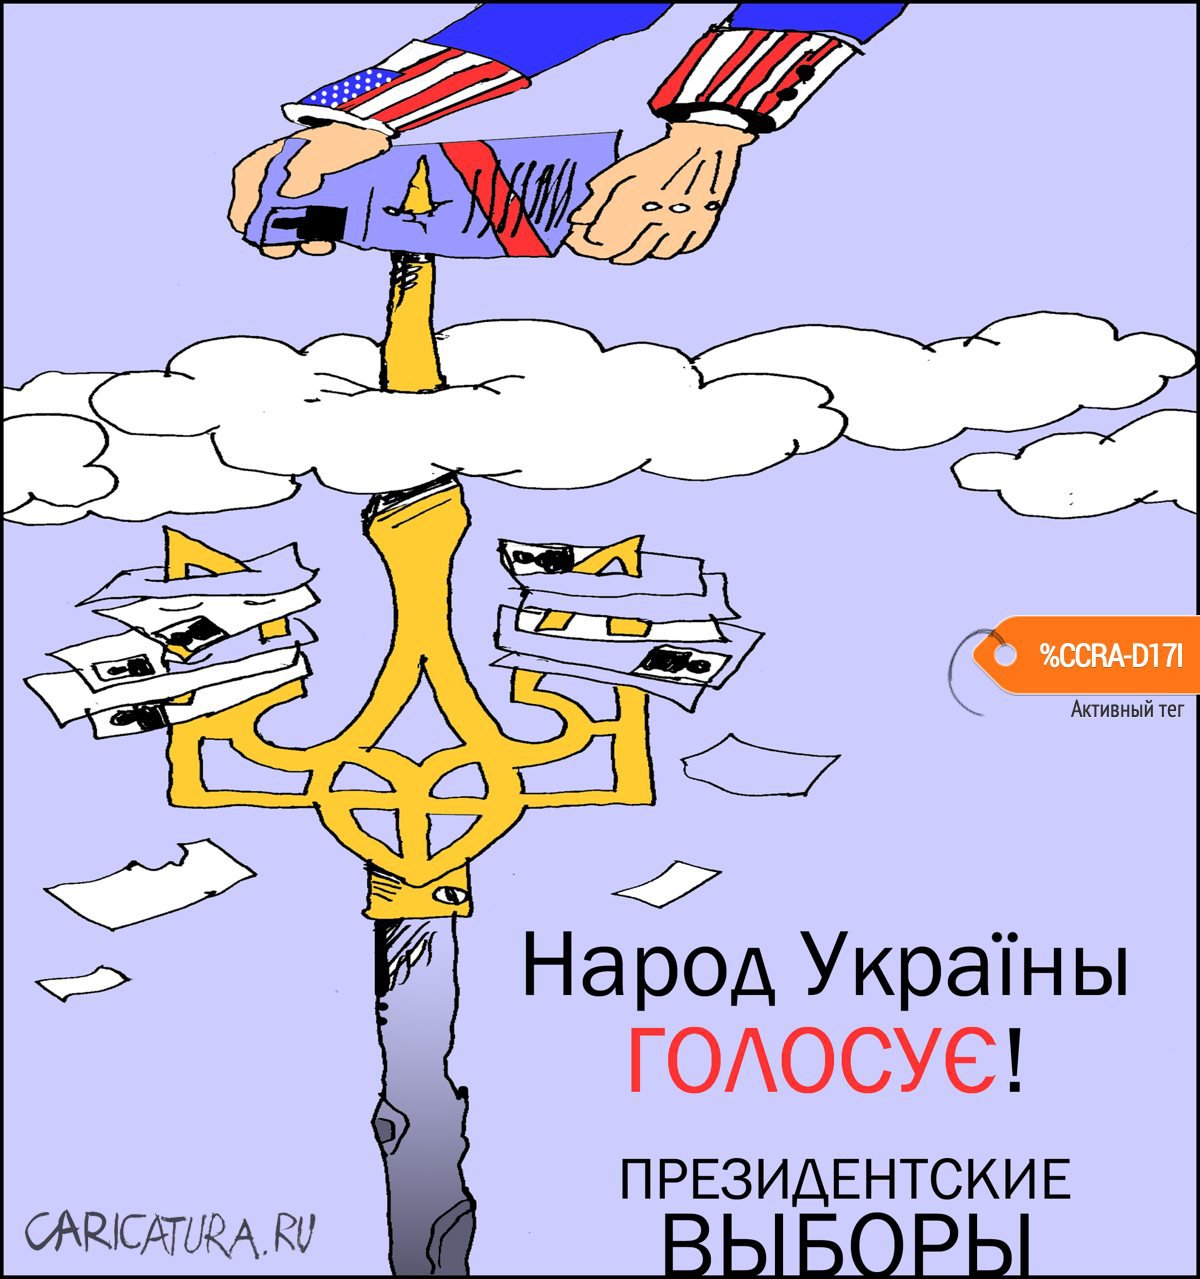 Карикатура "Народное волеизъявление", Александр Уваров